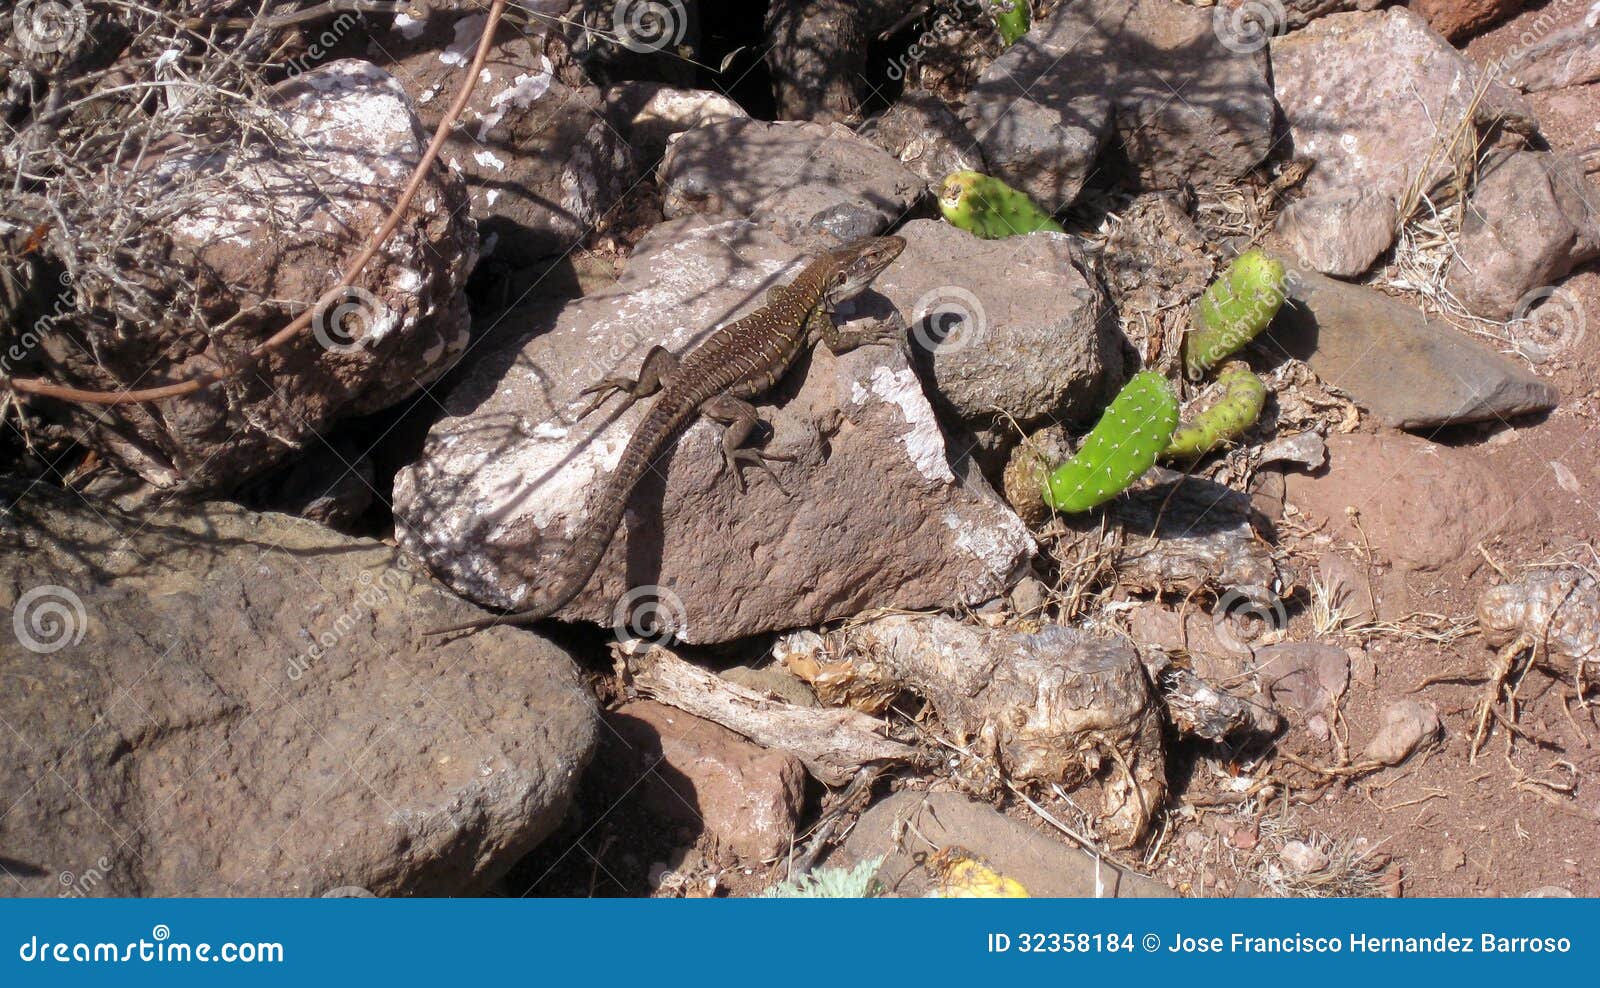 lizard between rocks